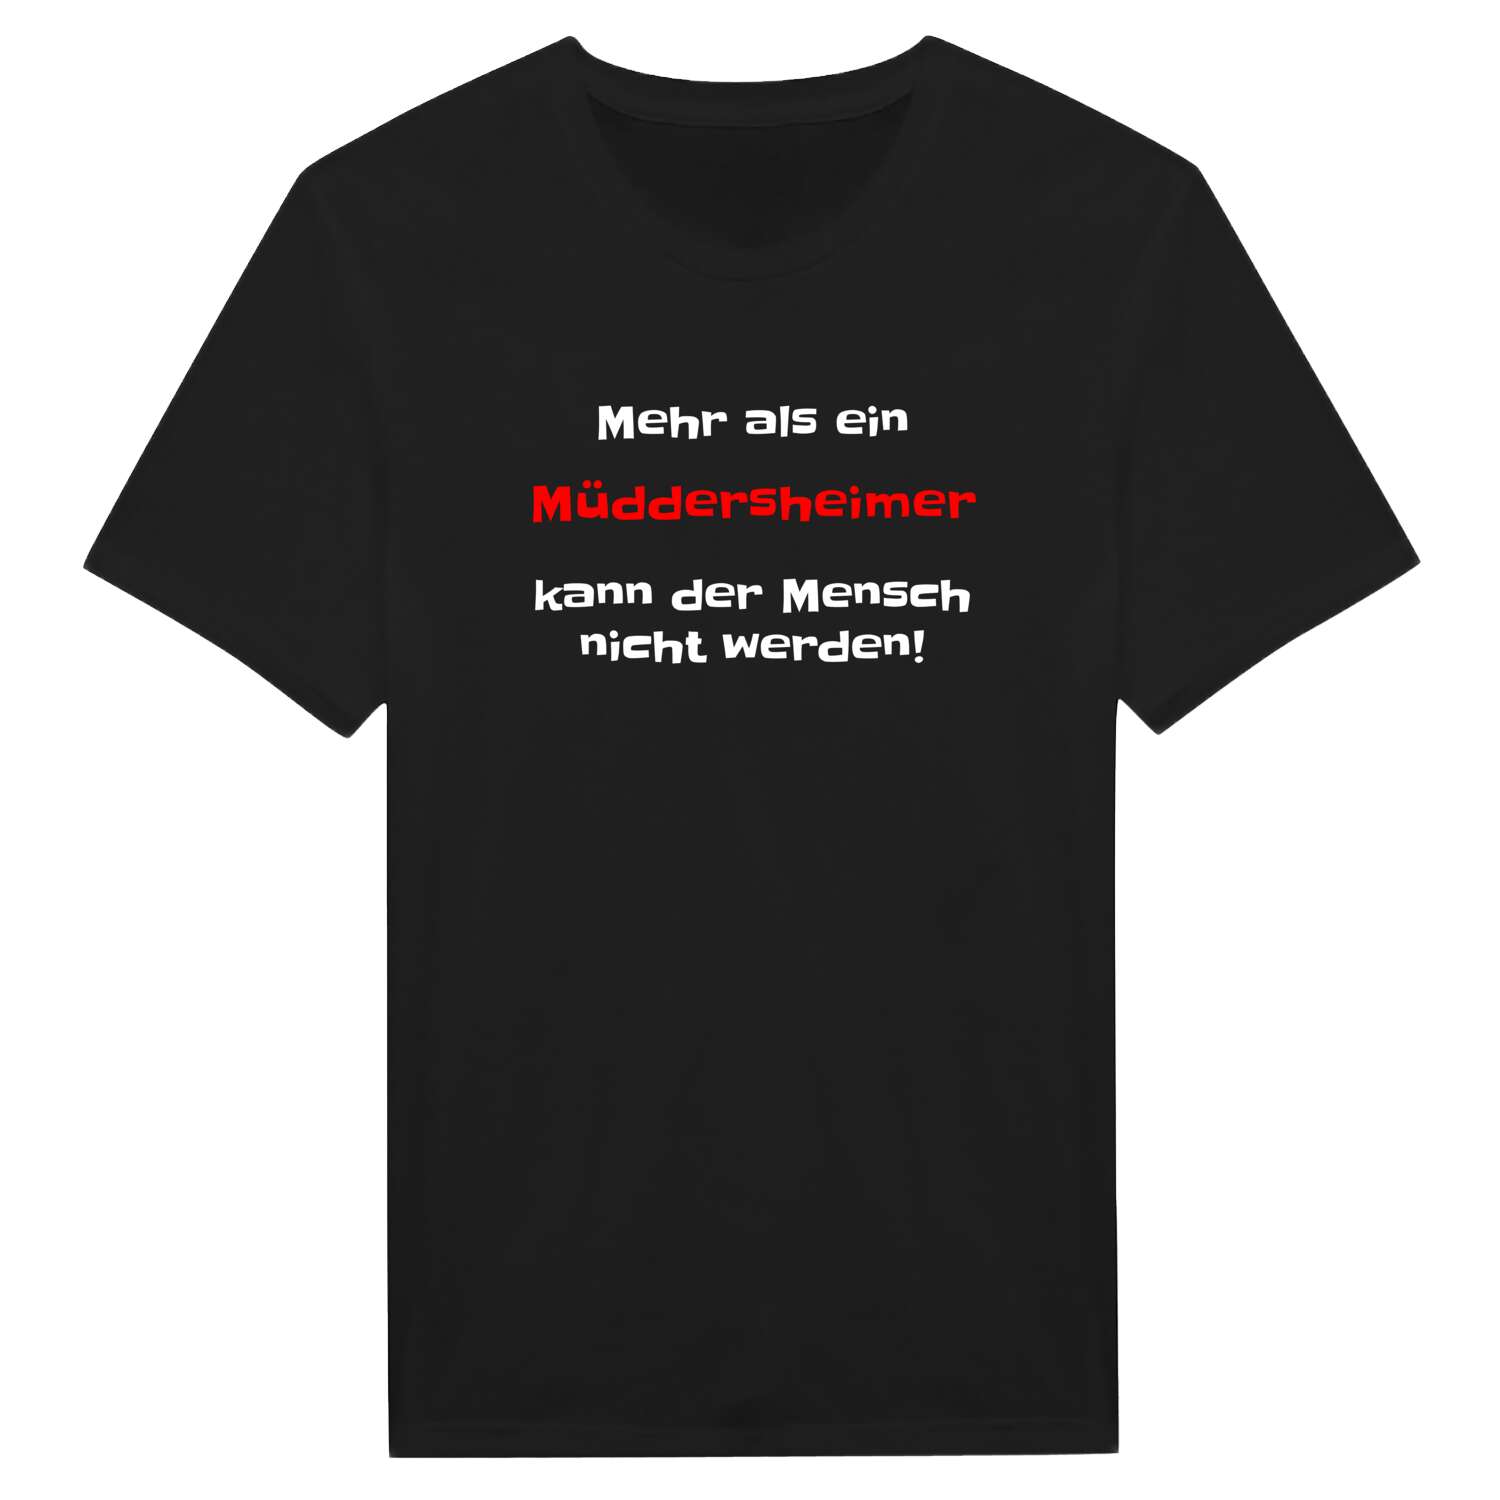 Müddersheim T-Shirt »Mehr als ein«